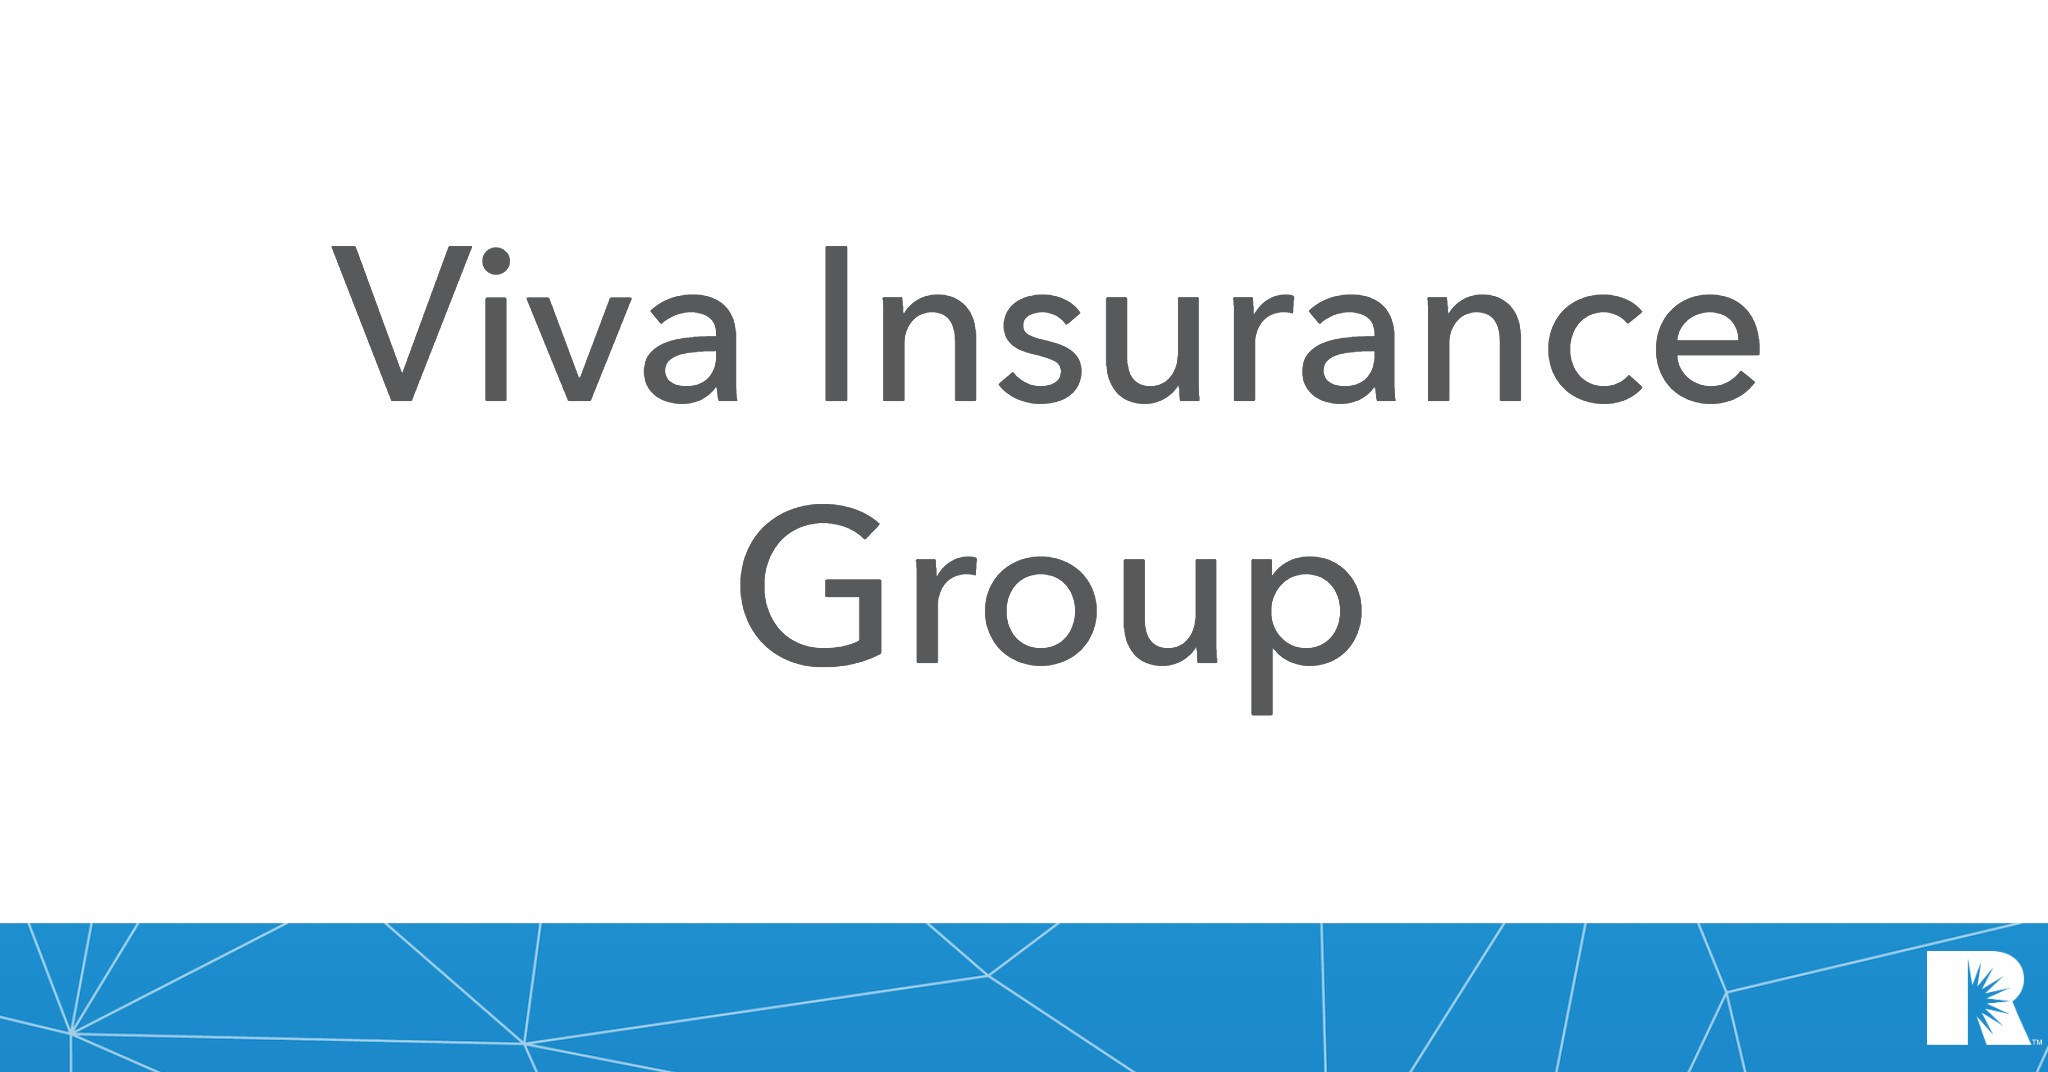 Agency logo for the Viva Insurance Group.